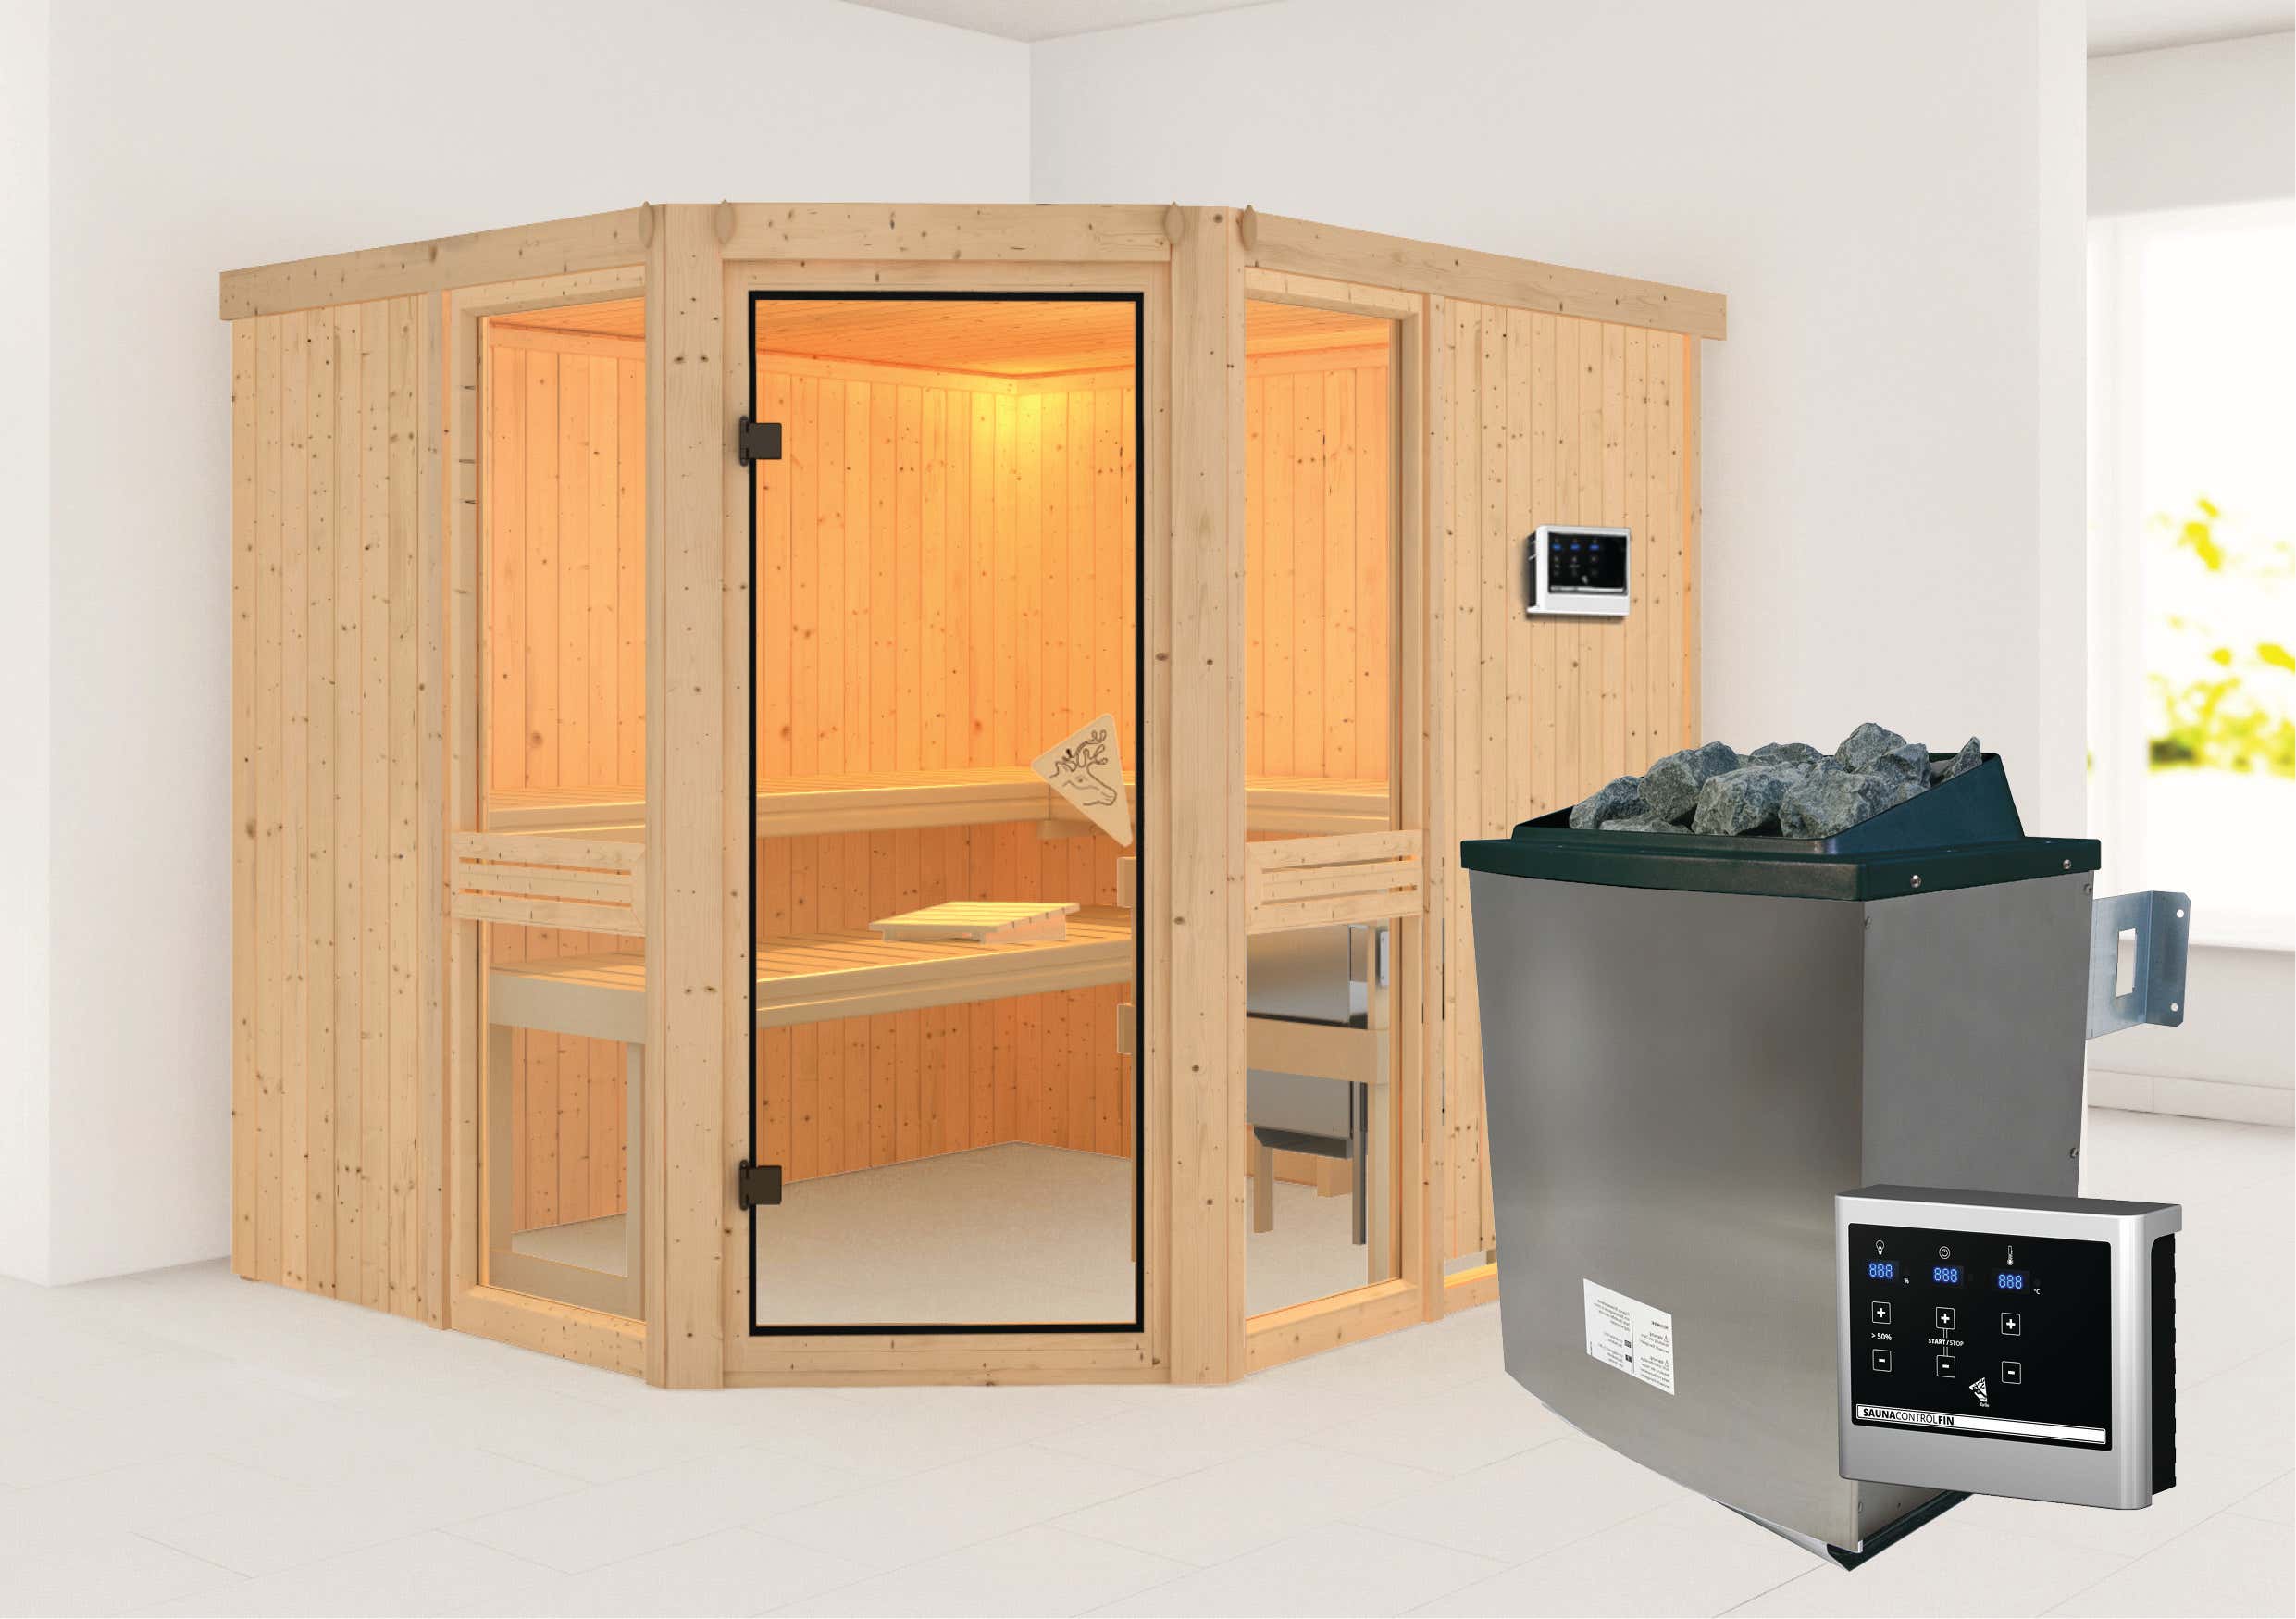 Karibu Sauna Innenkabine Amelia Saunaofen:9 KW integrierte Steuerung|Ausführung:Mit Dachkranz|Größe:B 196 x T 170 x H 198 cm